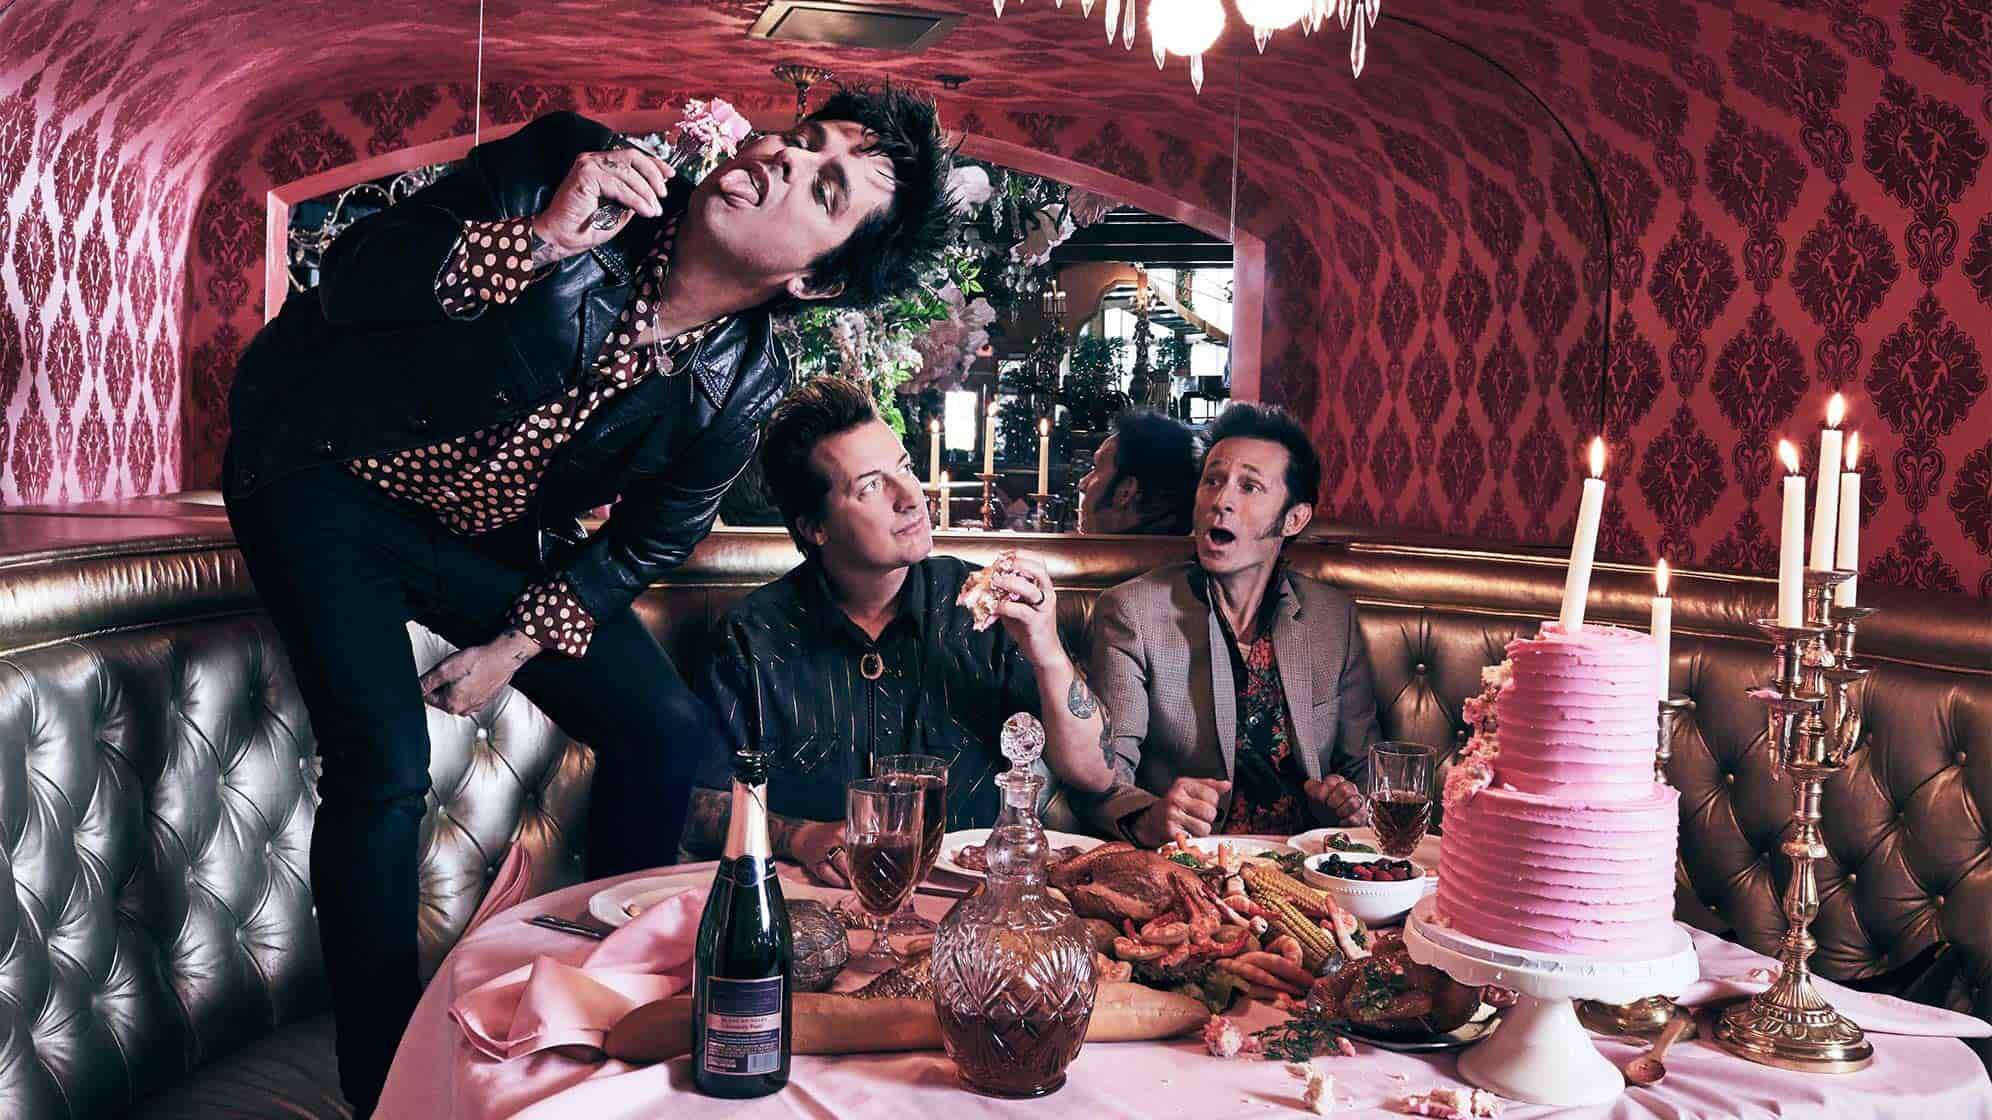 Ein Bandfoto der Band Green Day aus dem Jahr 2020, an einem überladenen Esstisch mit Grimassen